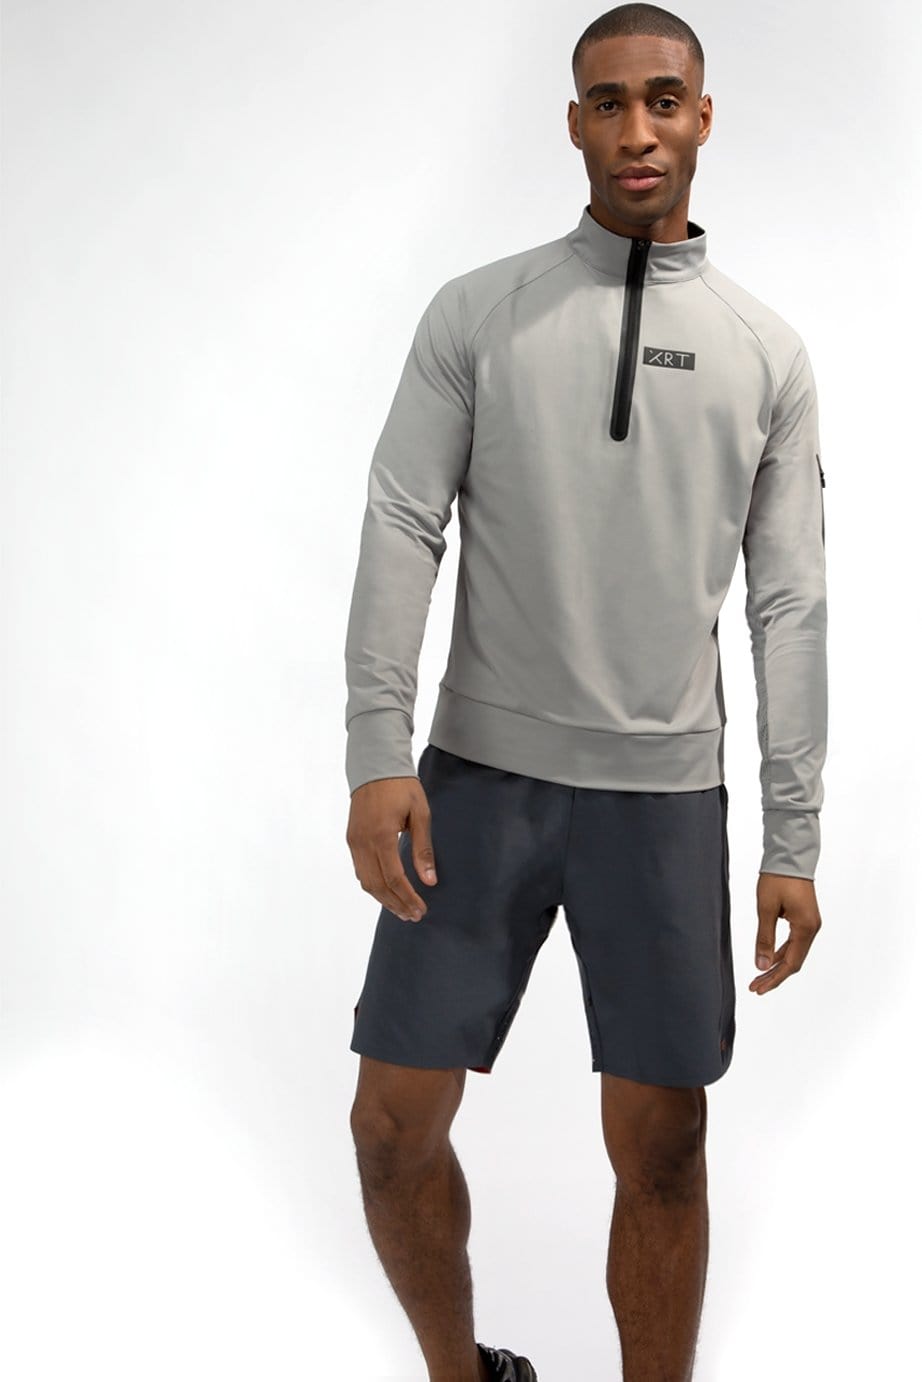 XRT grey zip long sleeve sport t-shirt